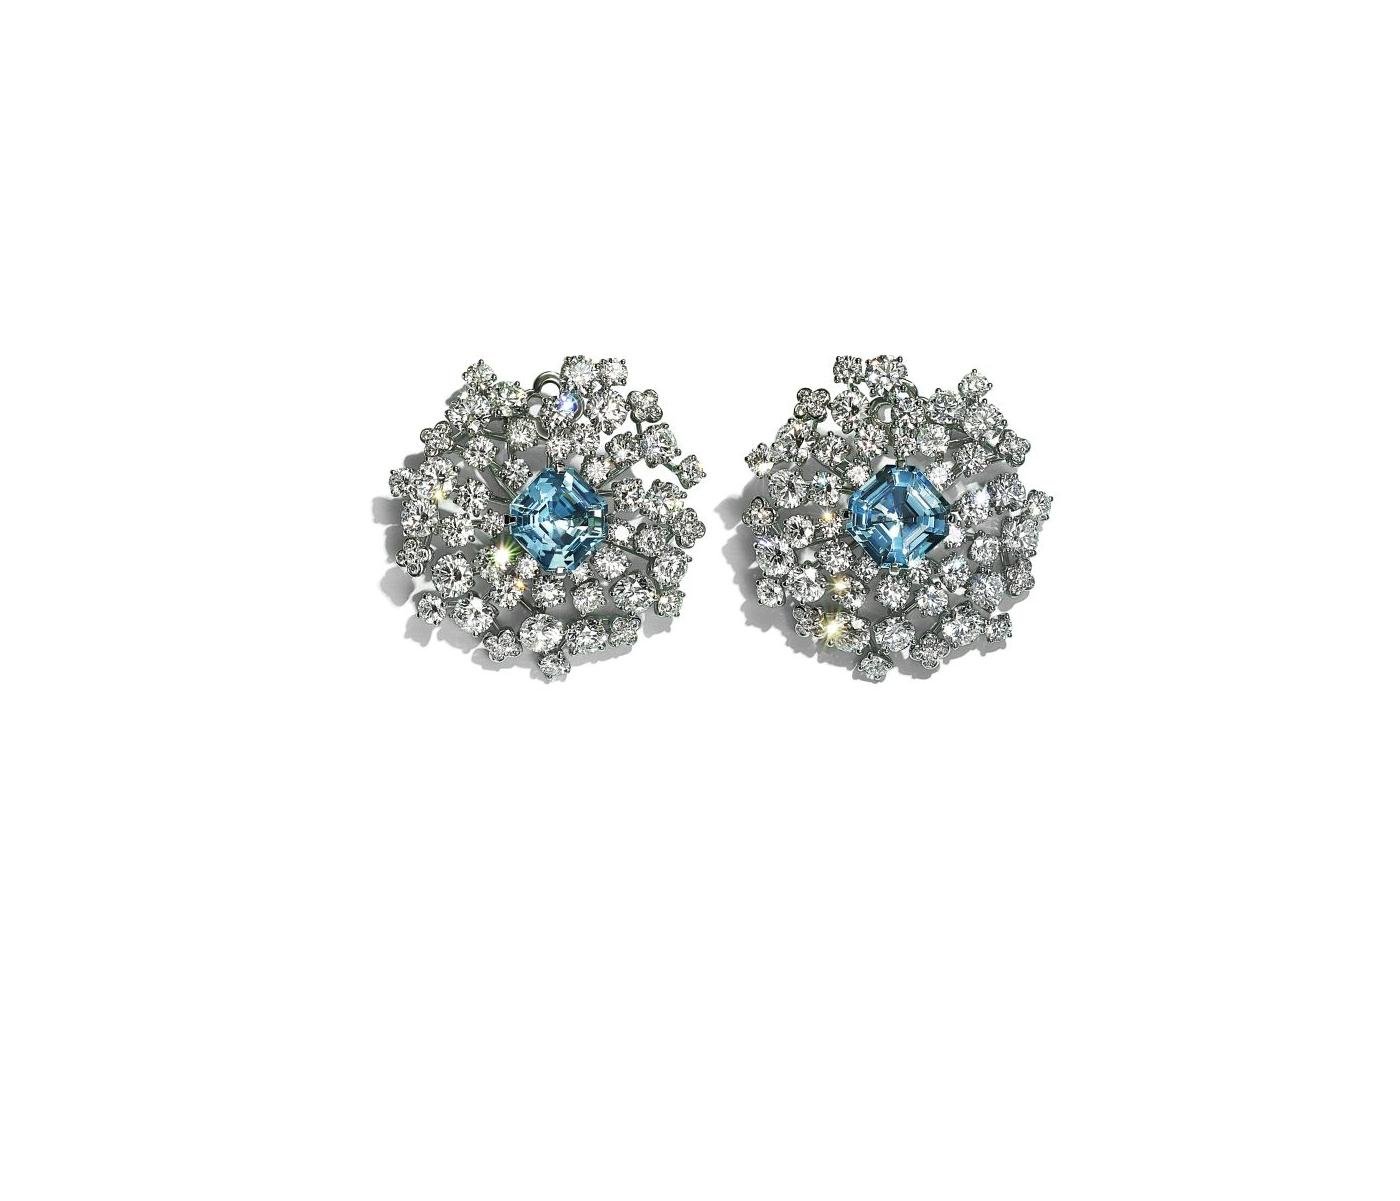 Earrings by Tiffany & Co.